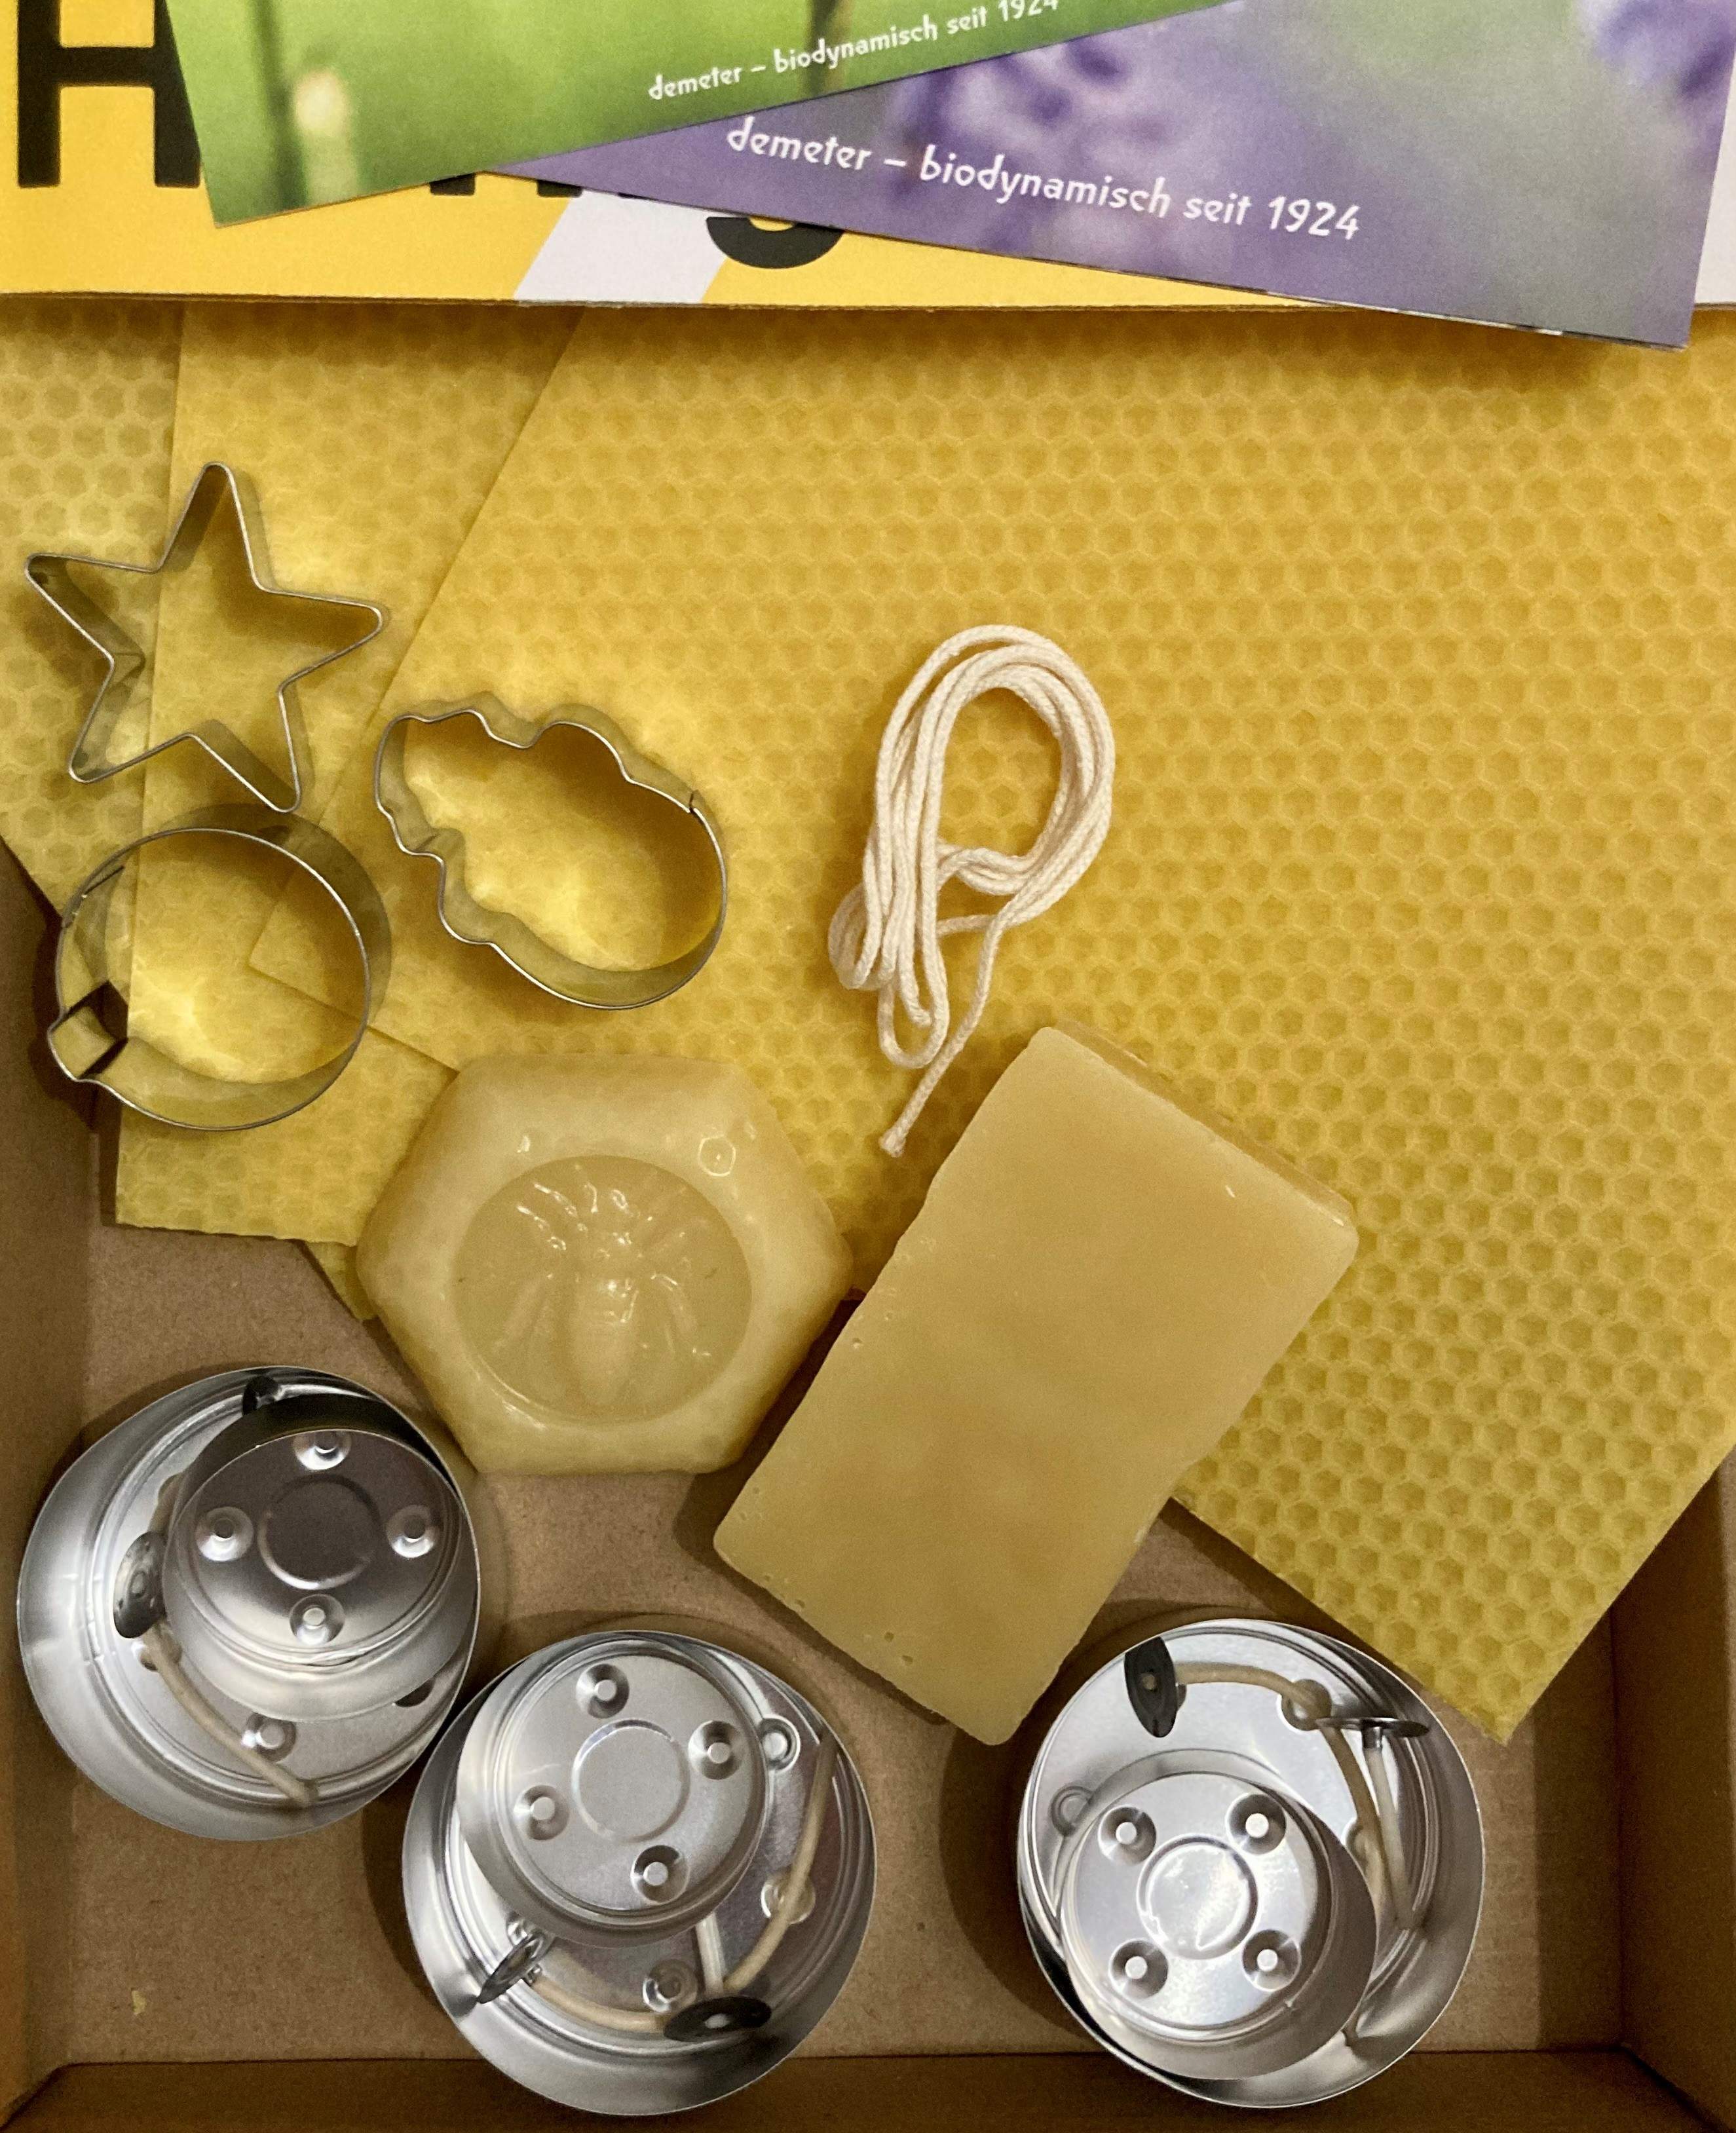 Geschenkebox - "DIY" Wachs-Kerzen und Wachs-Bastelset